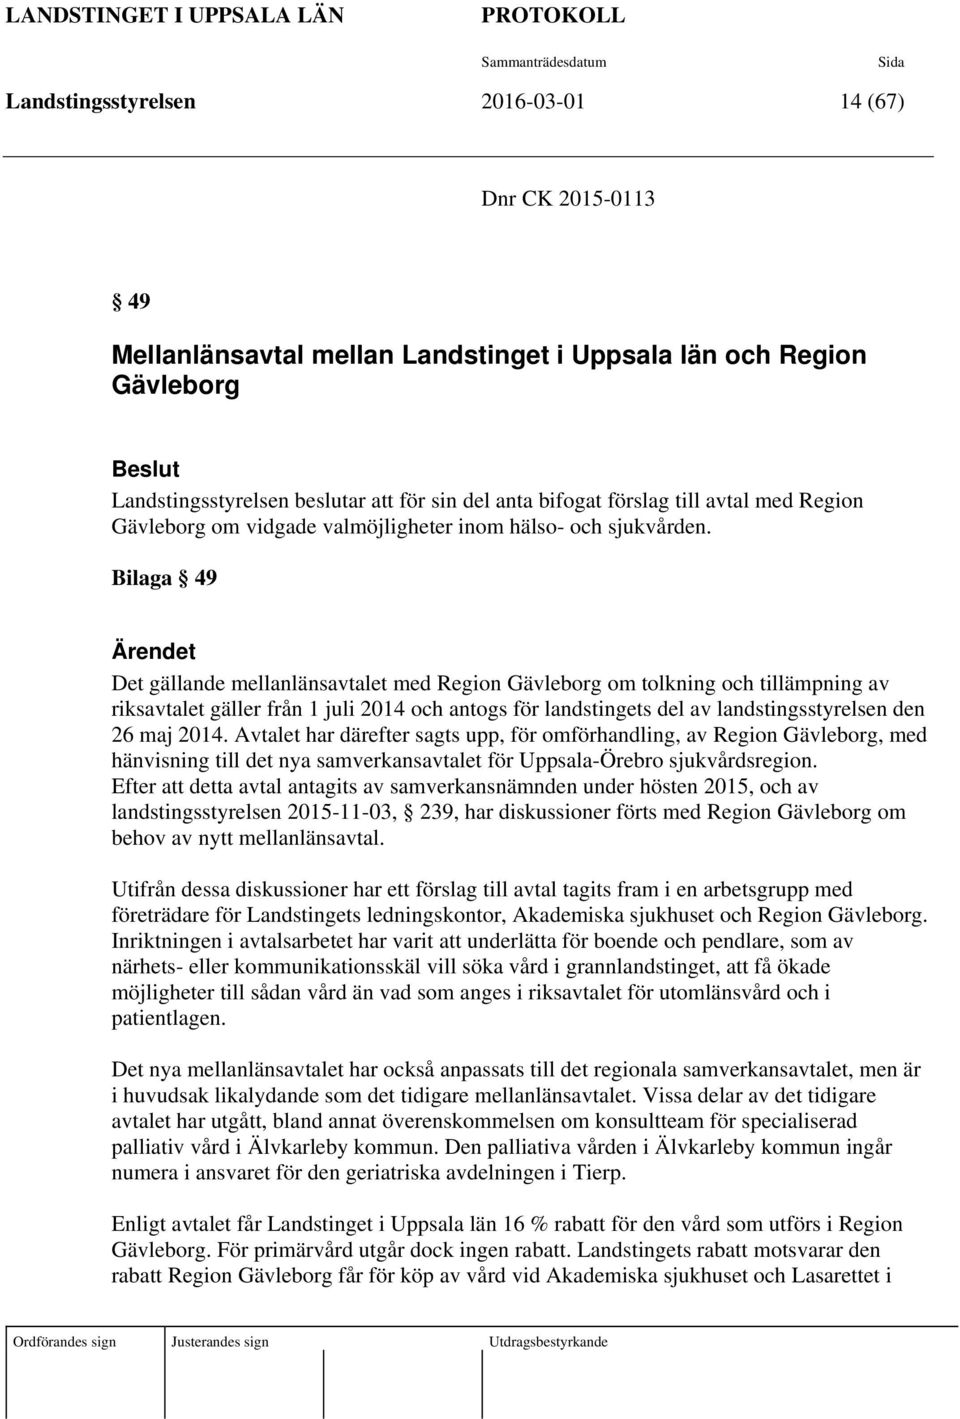 Bilaga 49 Ärendet Det gällande mellanlänsavtalet med Region Gävleborg om tolkning och tillämpning av riksavtalet gäller från 1 juli 2014 och antogs för landstingets del av landstingsstyrelsen den 26